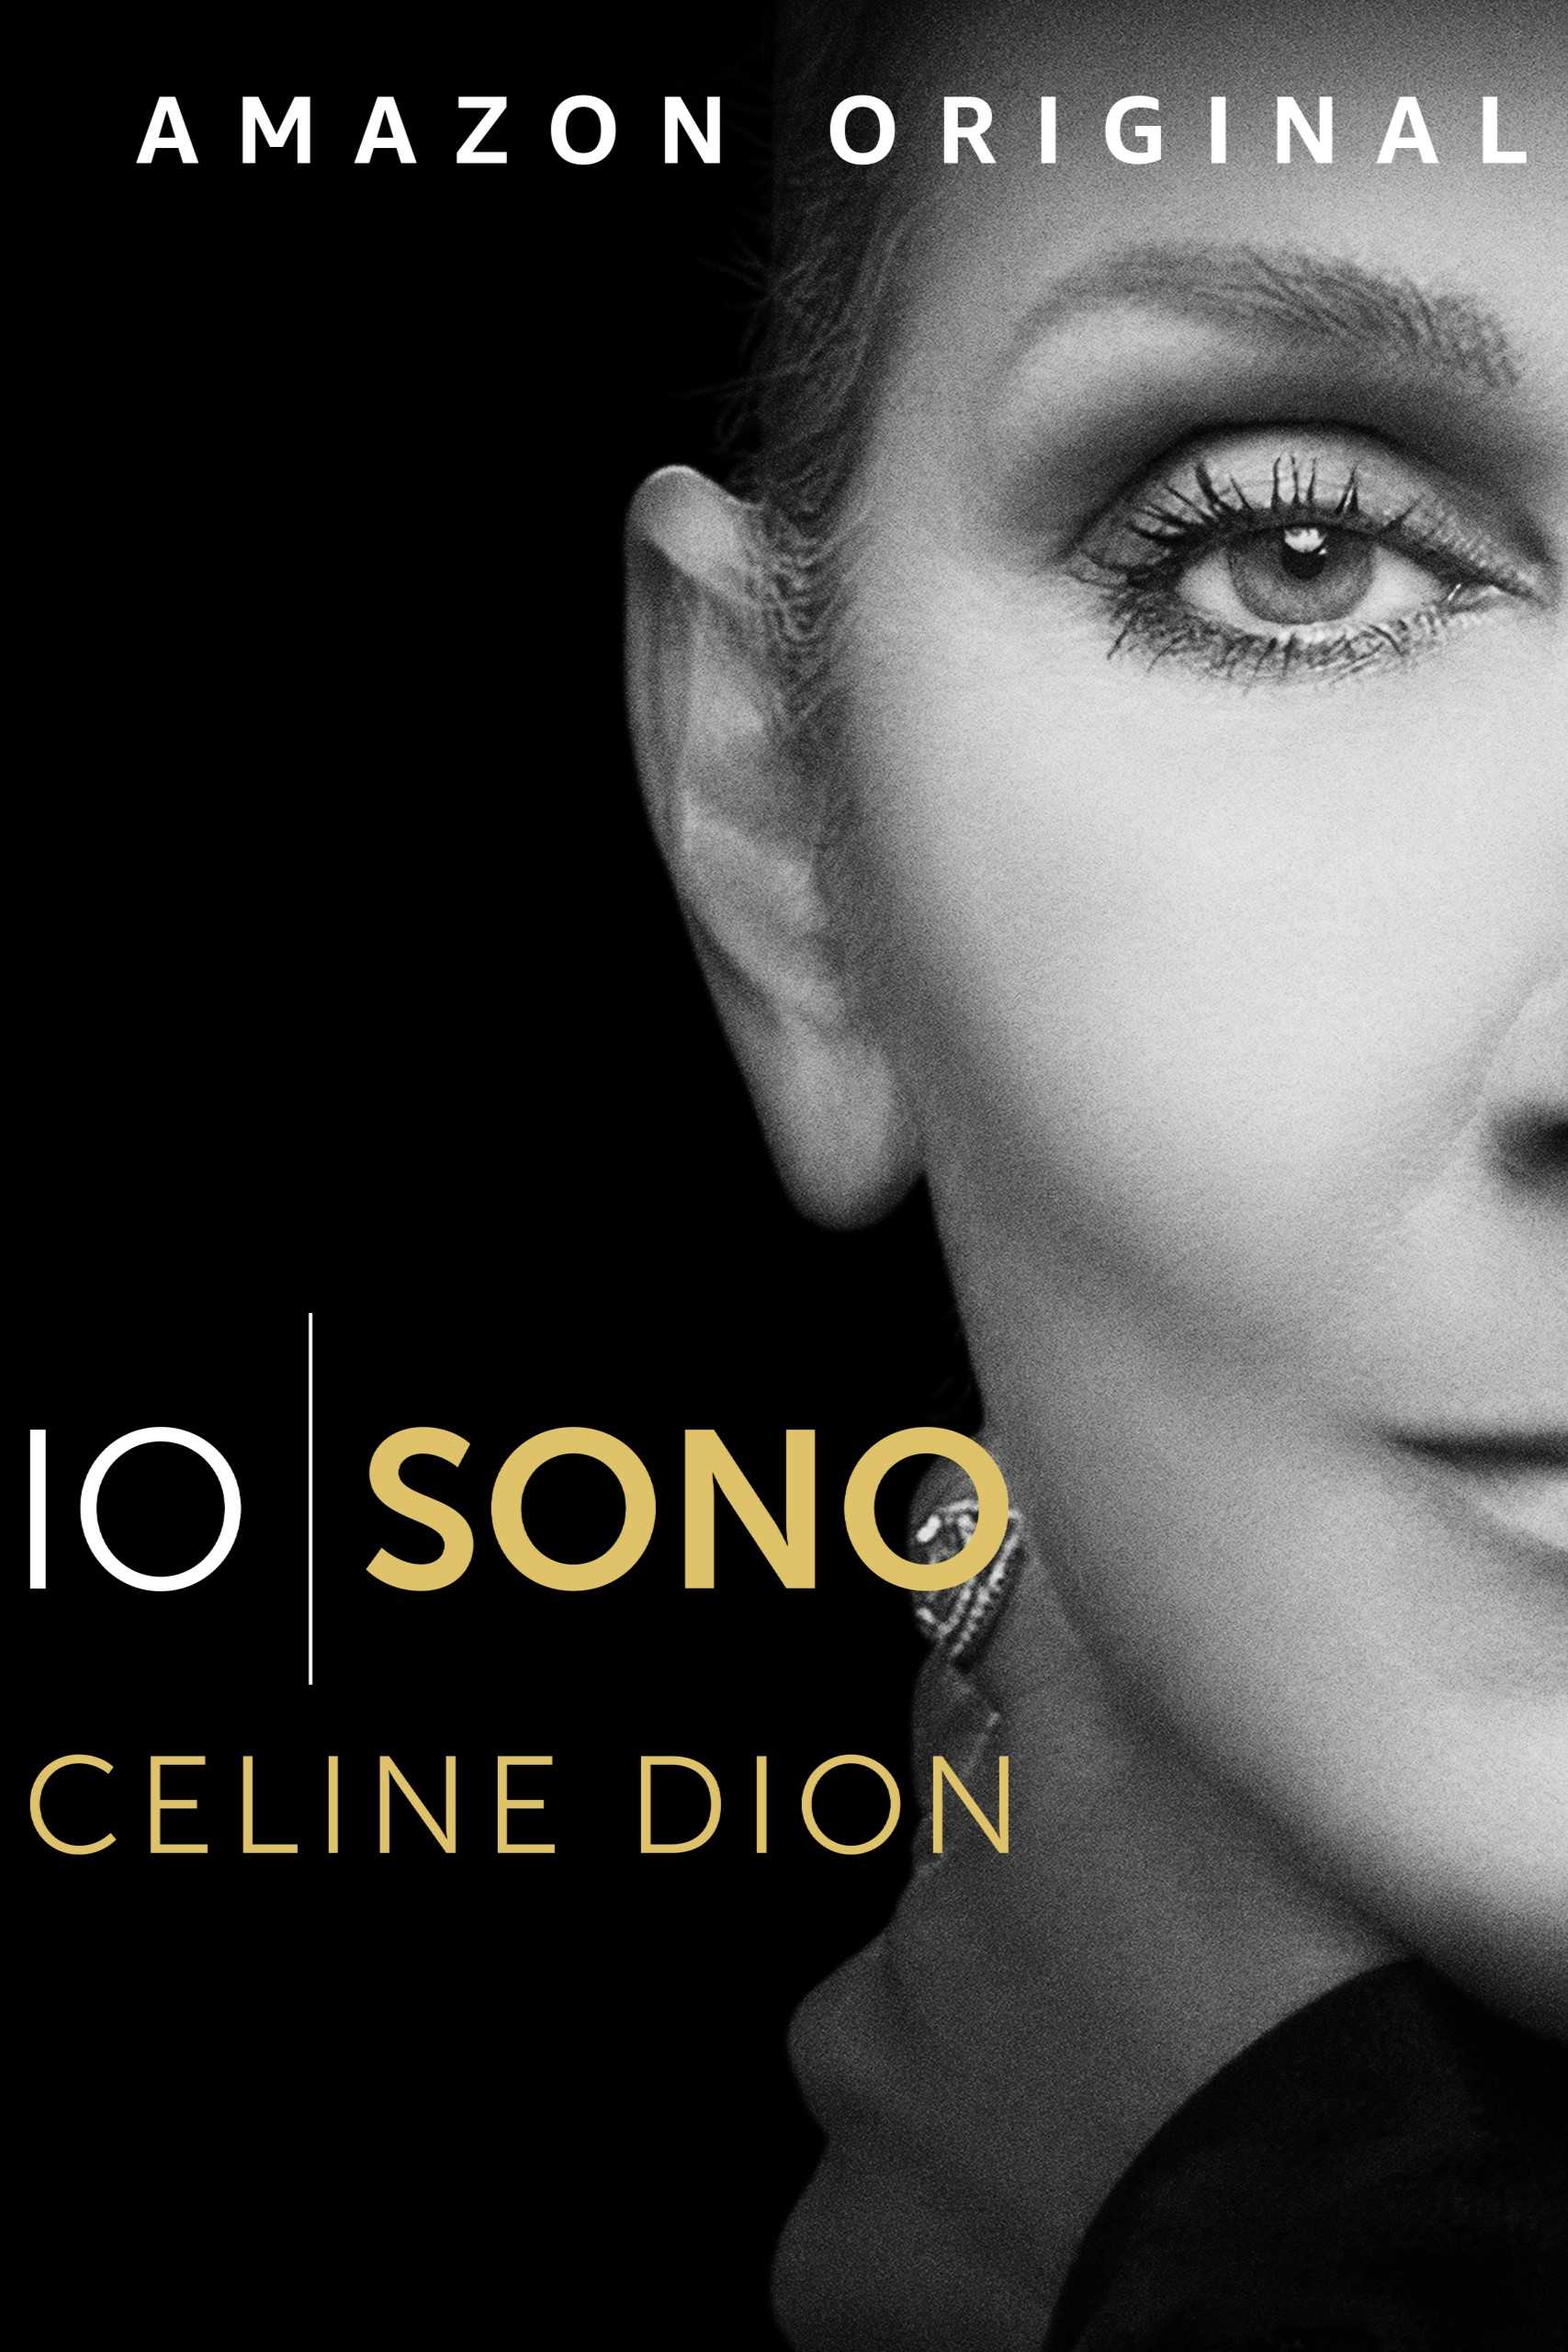 Io sono Celine Dion [Sub-ITA] in streaming